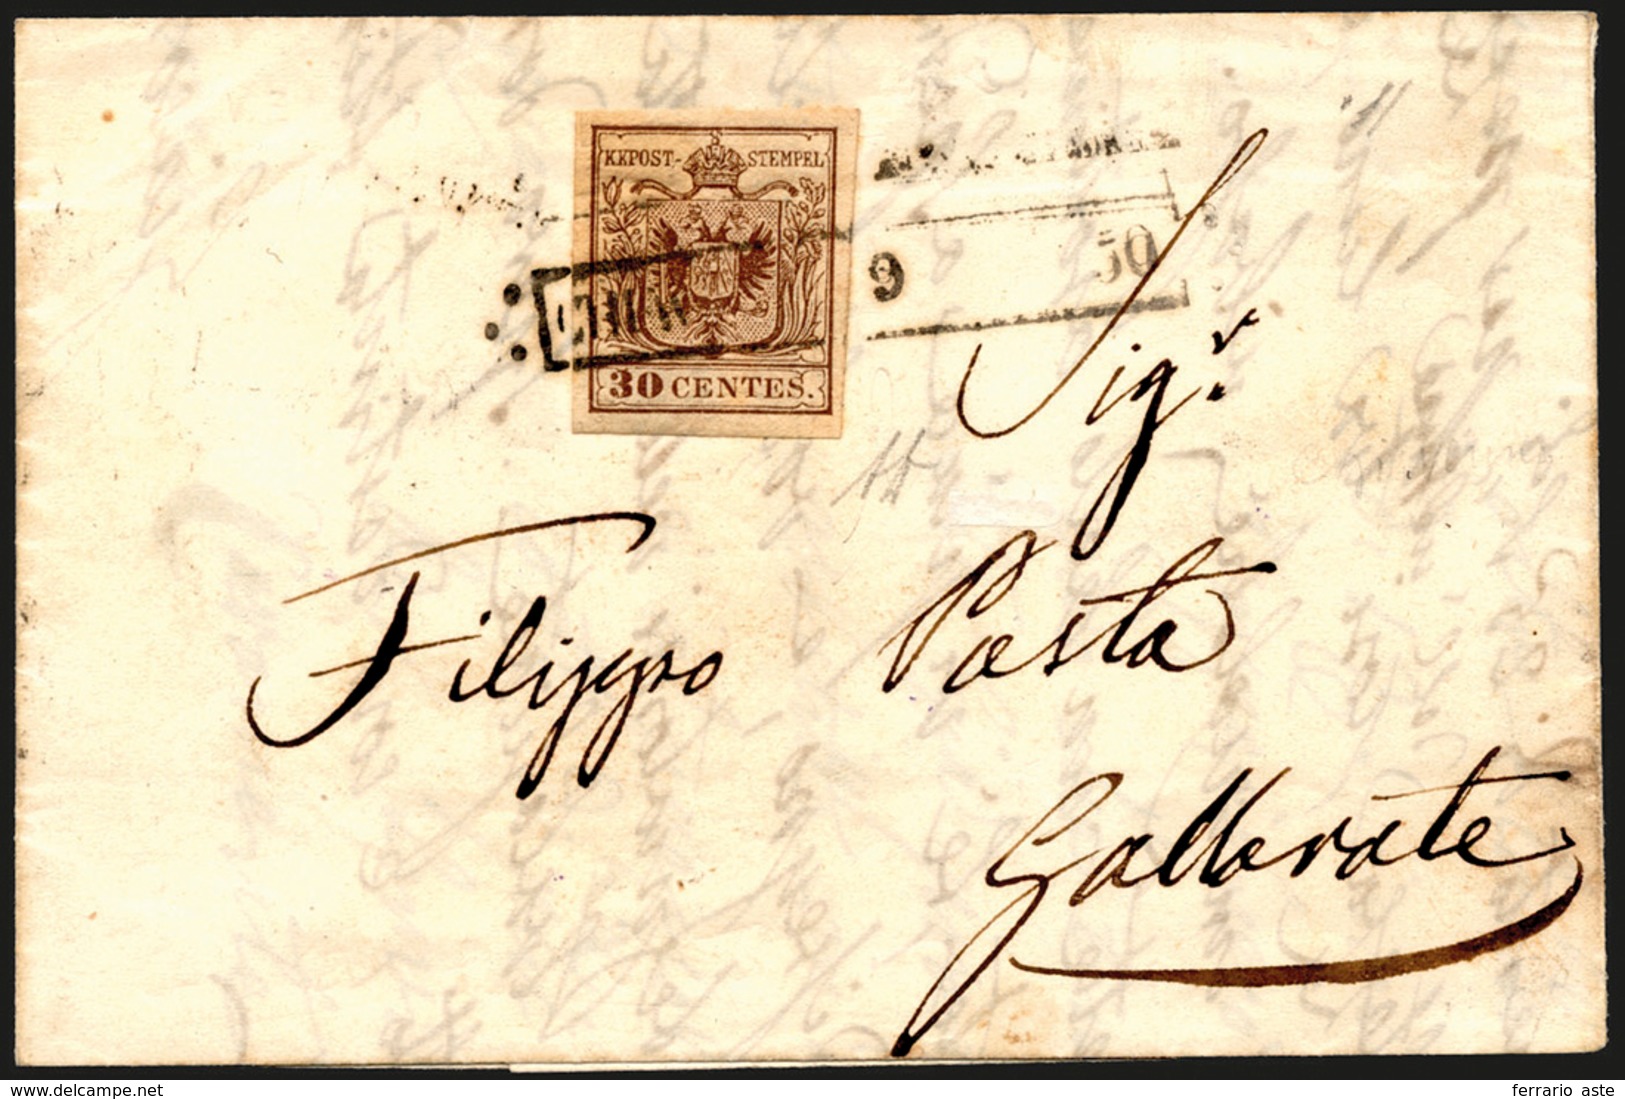 275 CHIAVENNA, R50 Punti 12 - 30 Cent. (7), Perfetto, Su Lettera Del 9/8/1850 Per Gallarate. Bella E Rar... - Lombardo-Vénétie